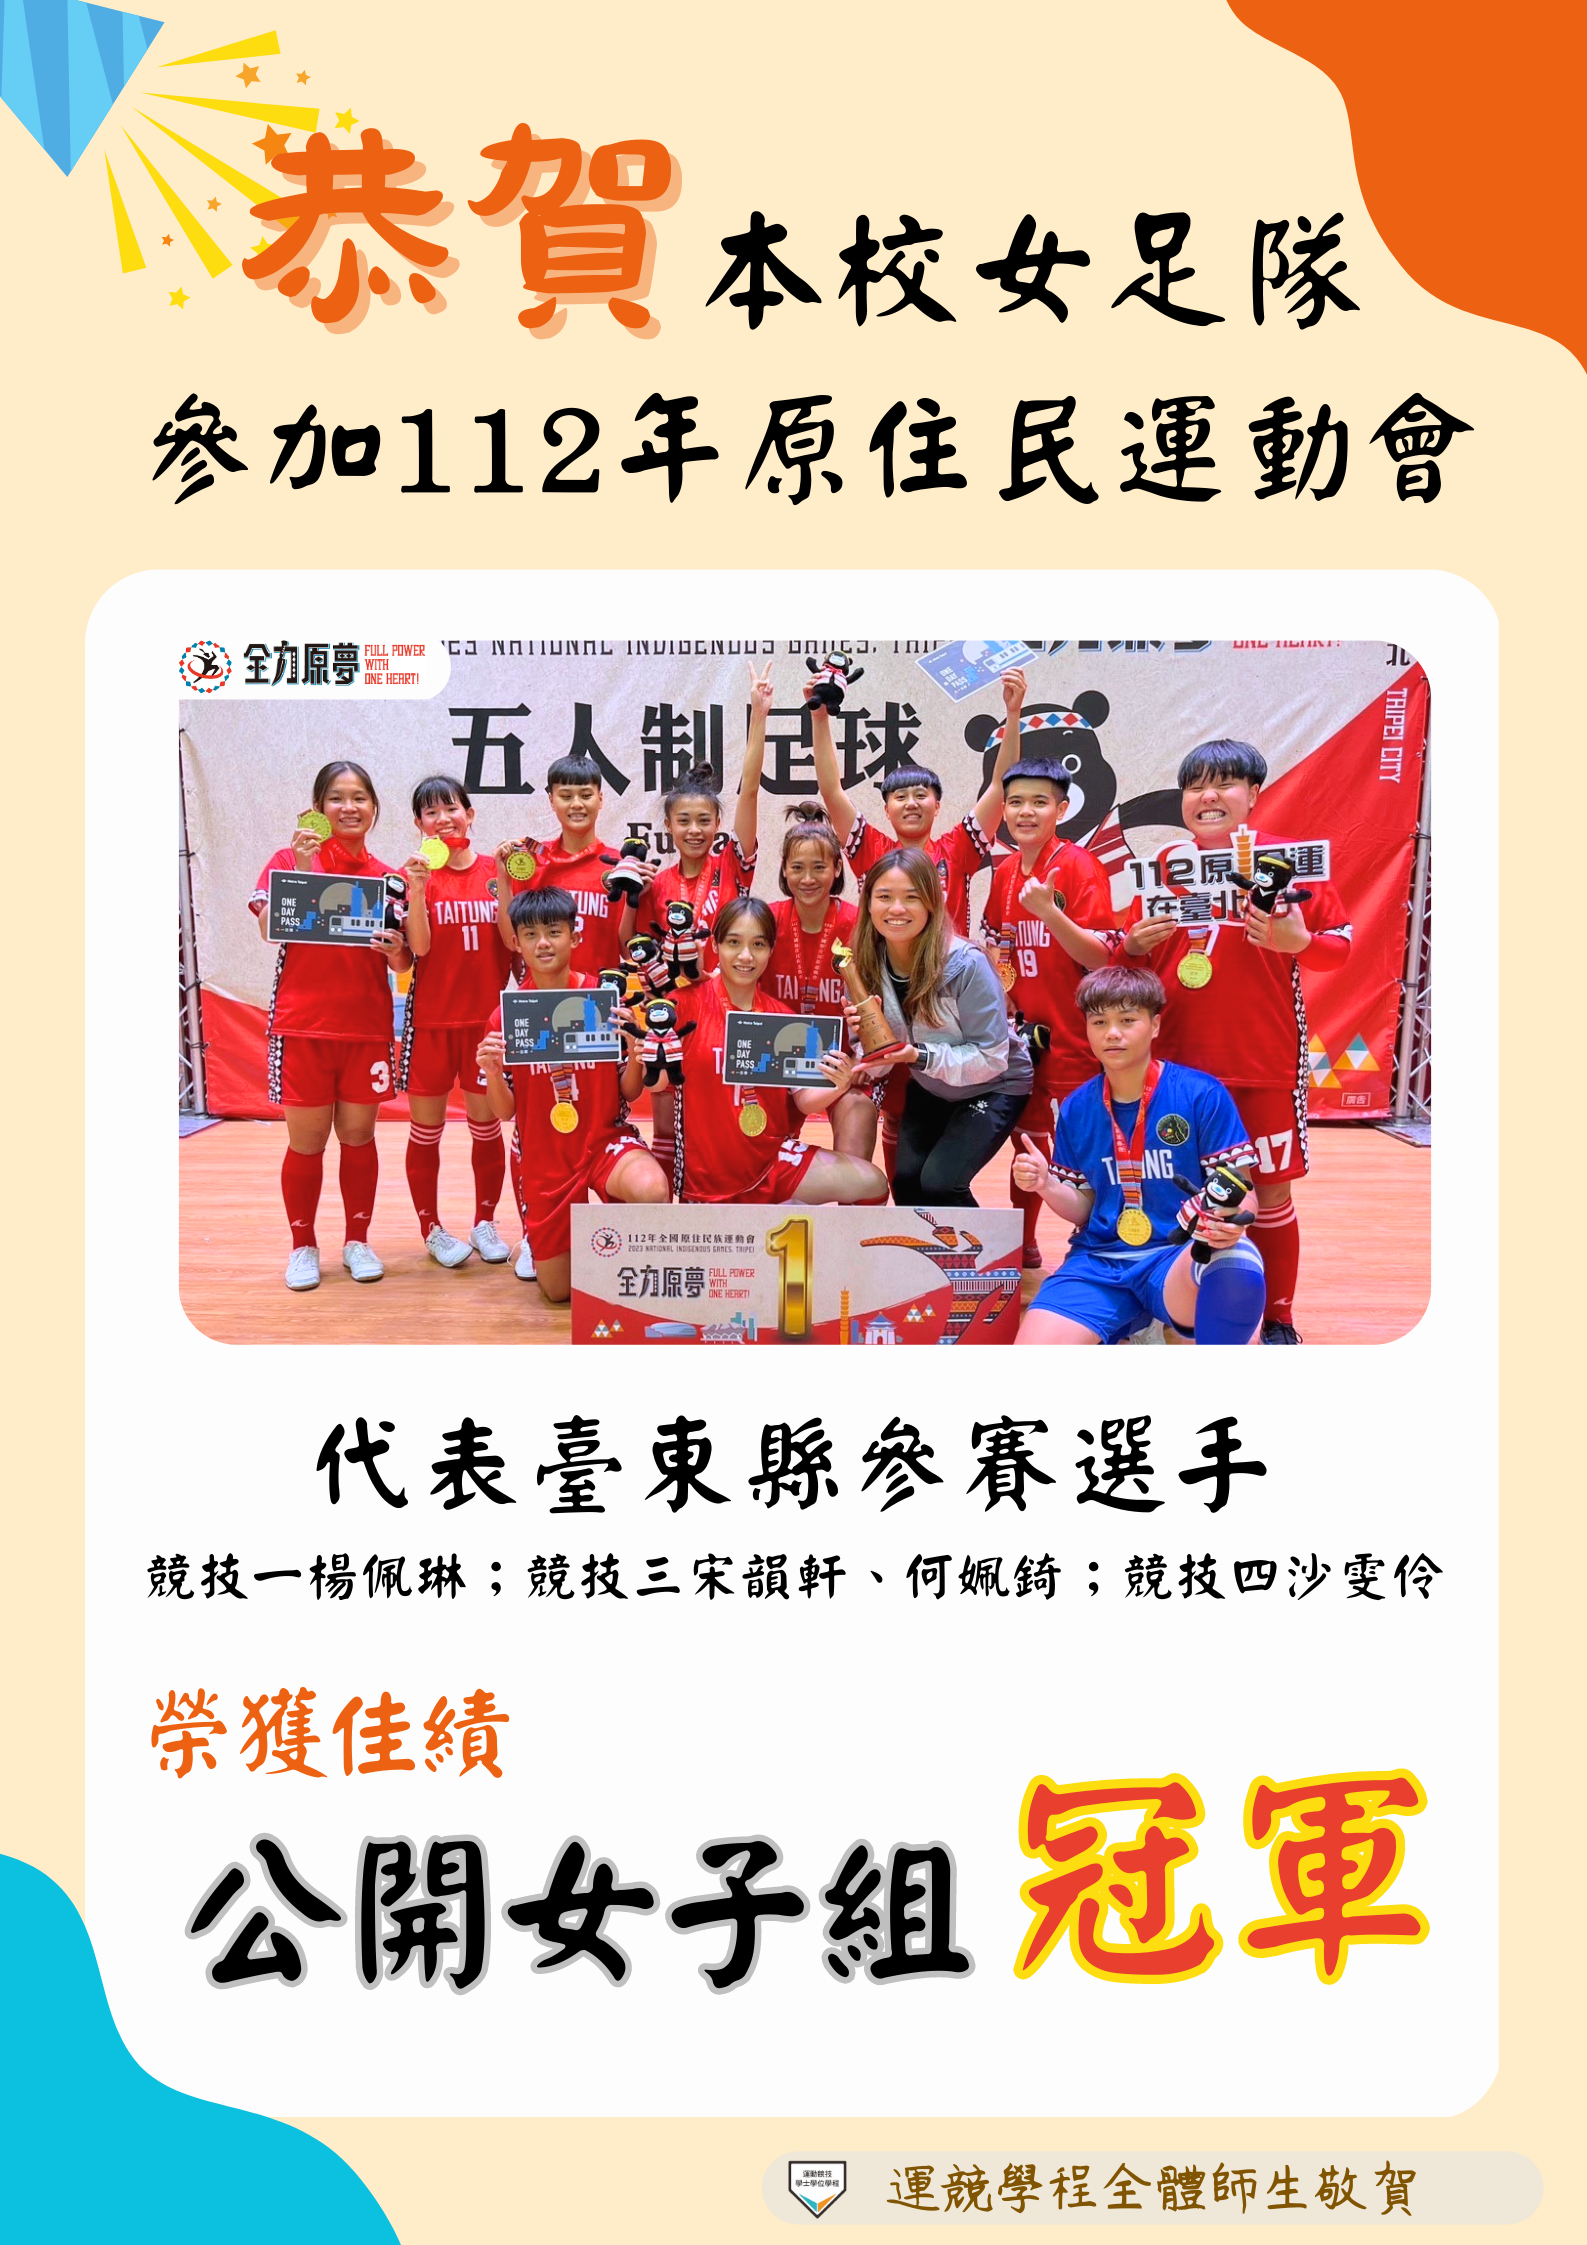 112原住民運動會女足隊代表台東縣冠軍